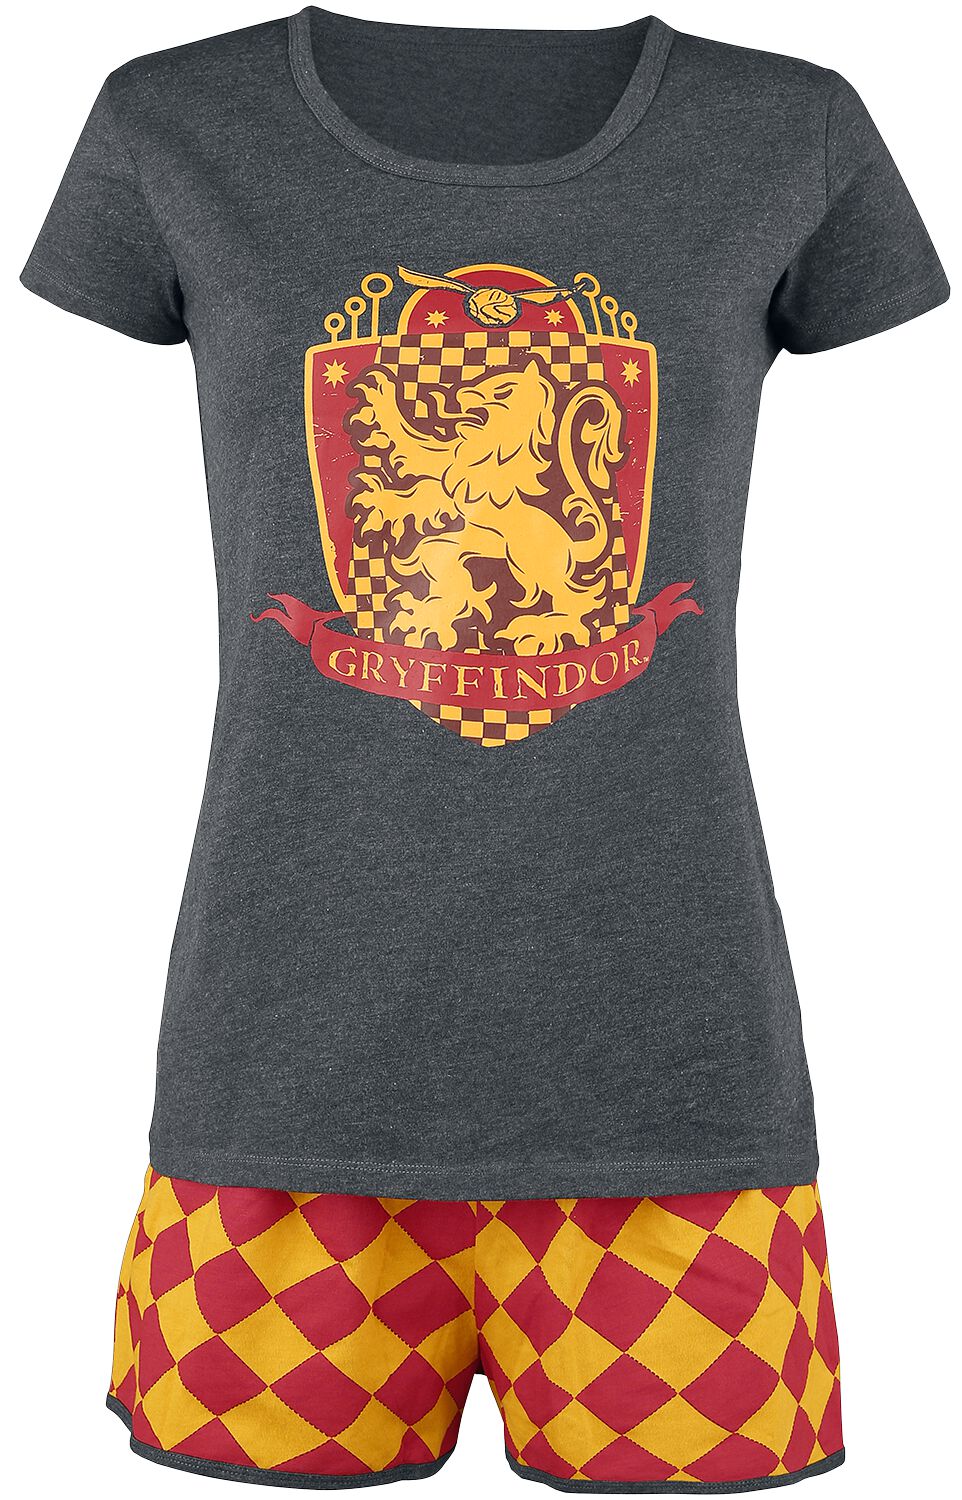 Harry Potter Schlafanzug - Gryffindor Quidditch - XS bis 5XL - für Damen - Größe XL - grau/rot/gelb  - EMP exklusives Merchandise!